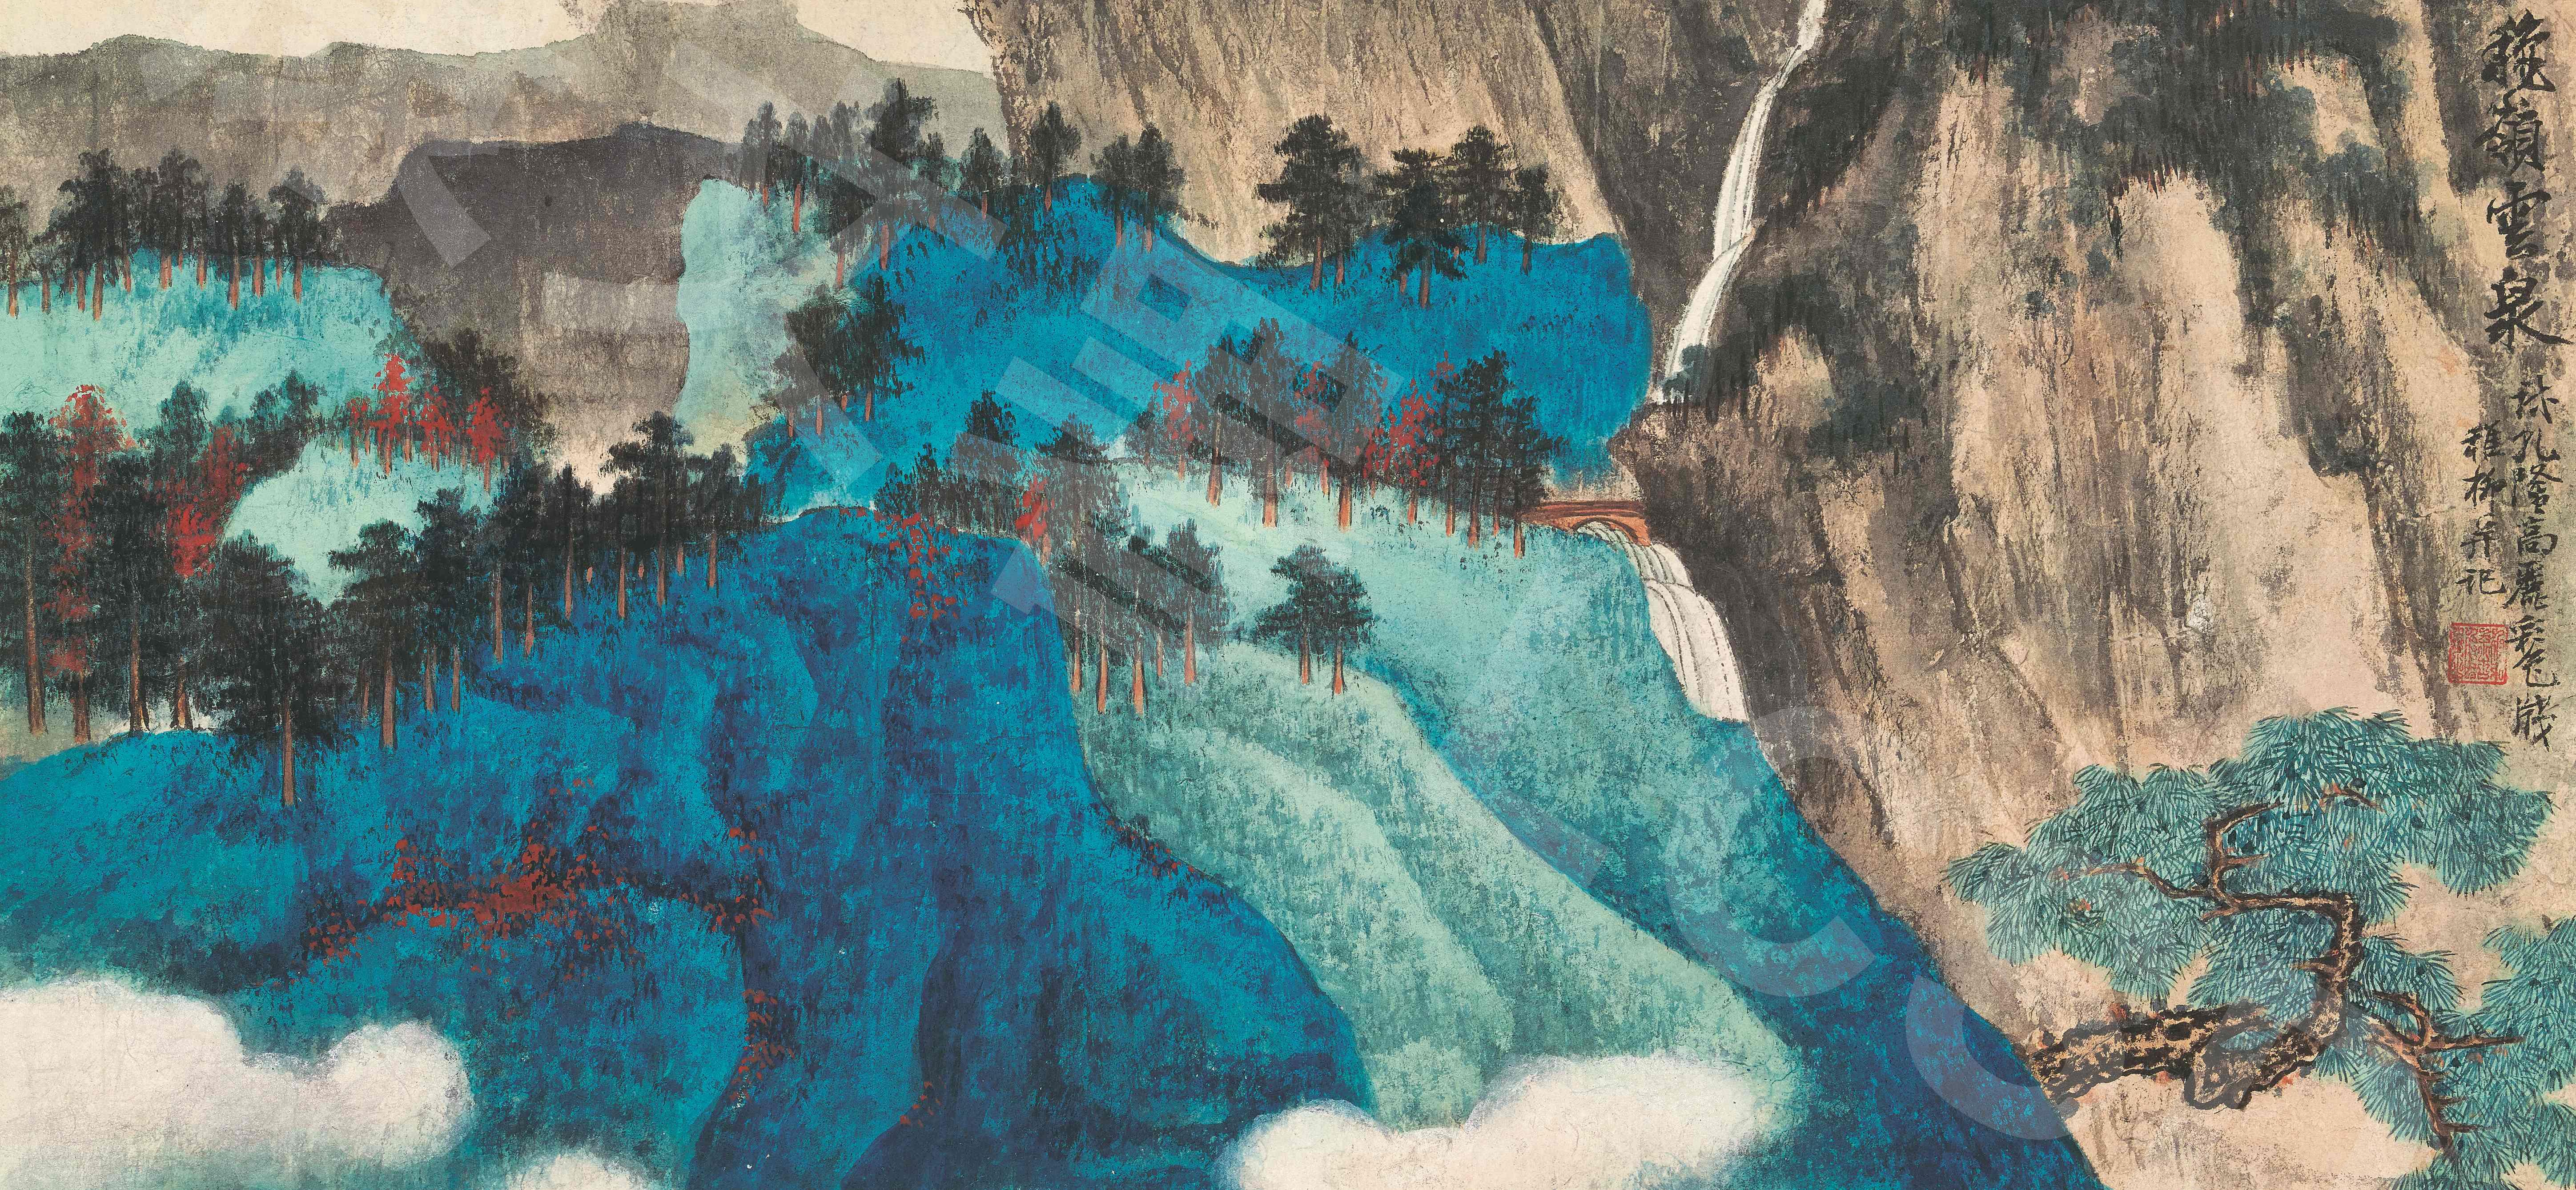 謝稚柳 《秋嶺雲泉圖卷》 1966年 水墨設色紙本 © 香港藝術館藏品